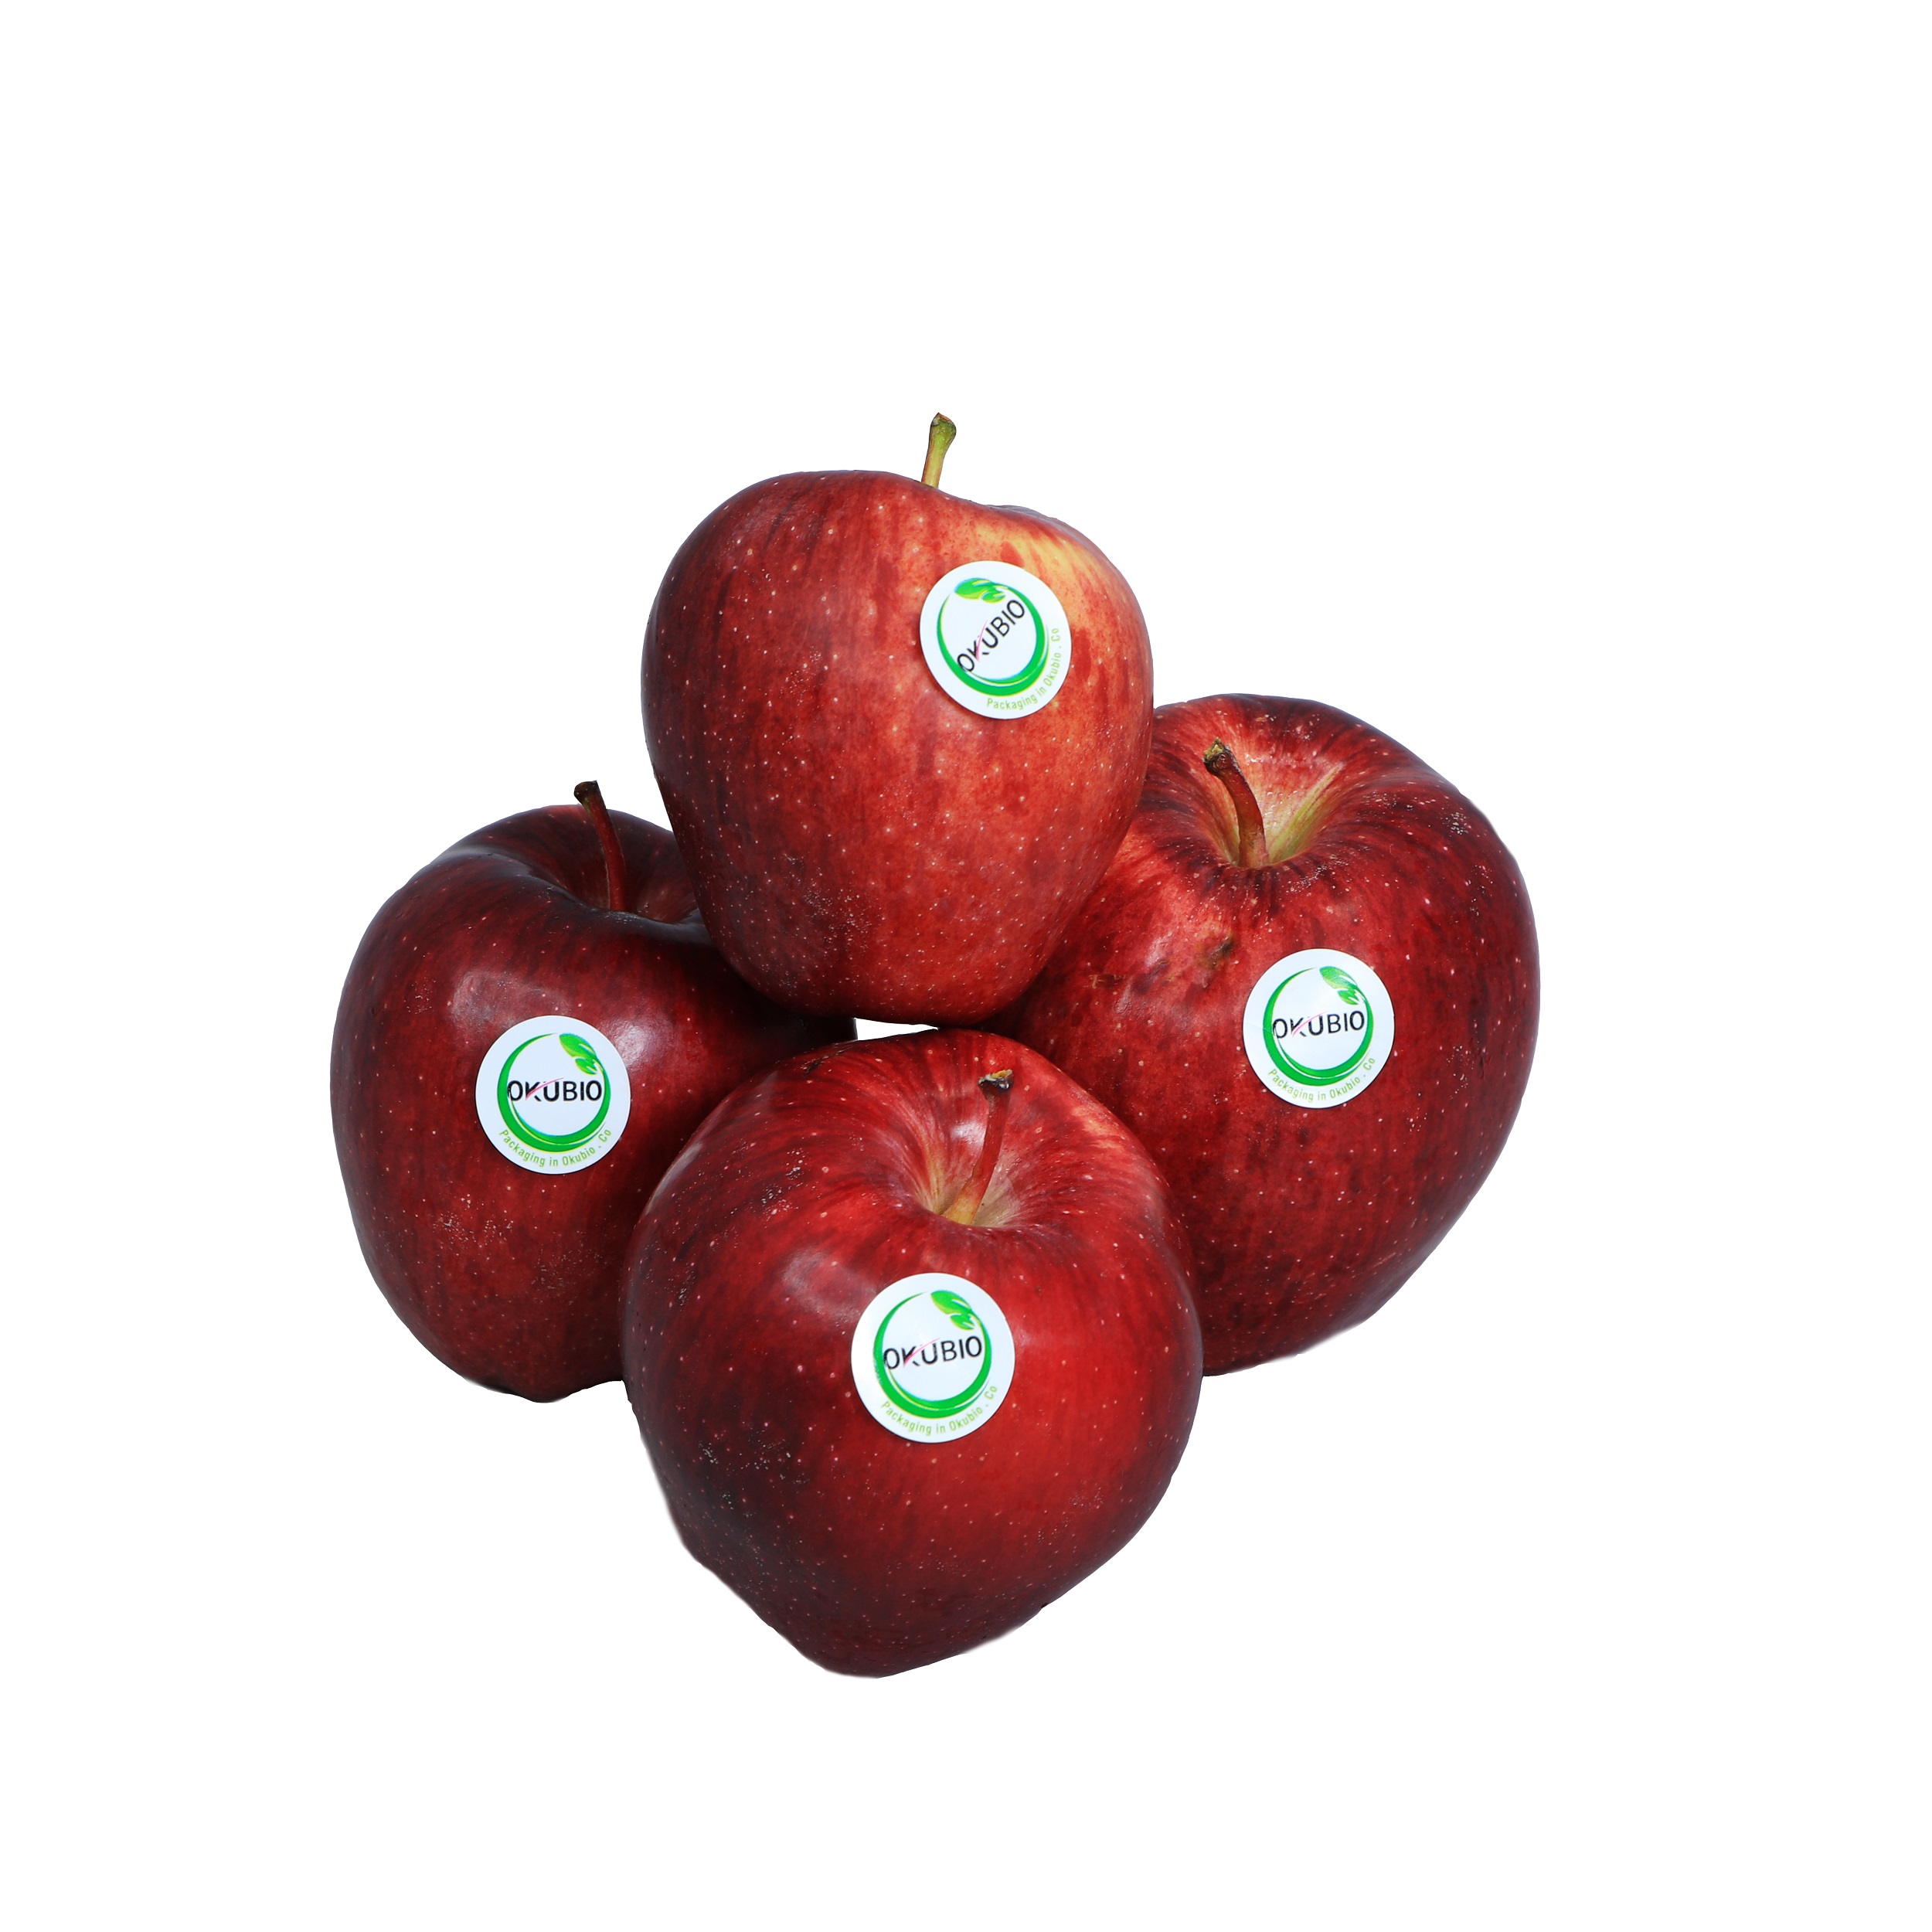 سیب قرمز درجه یک اکوبیو 1 کیلو گرم